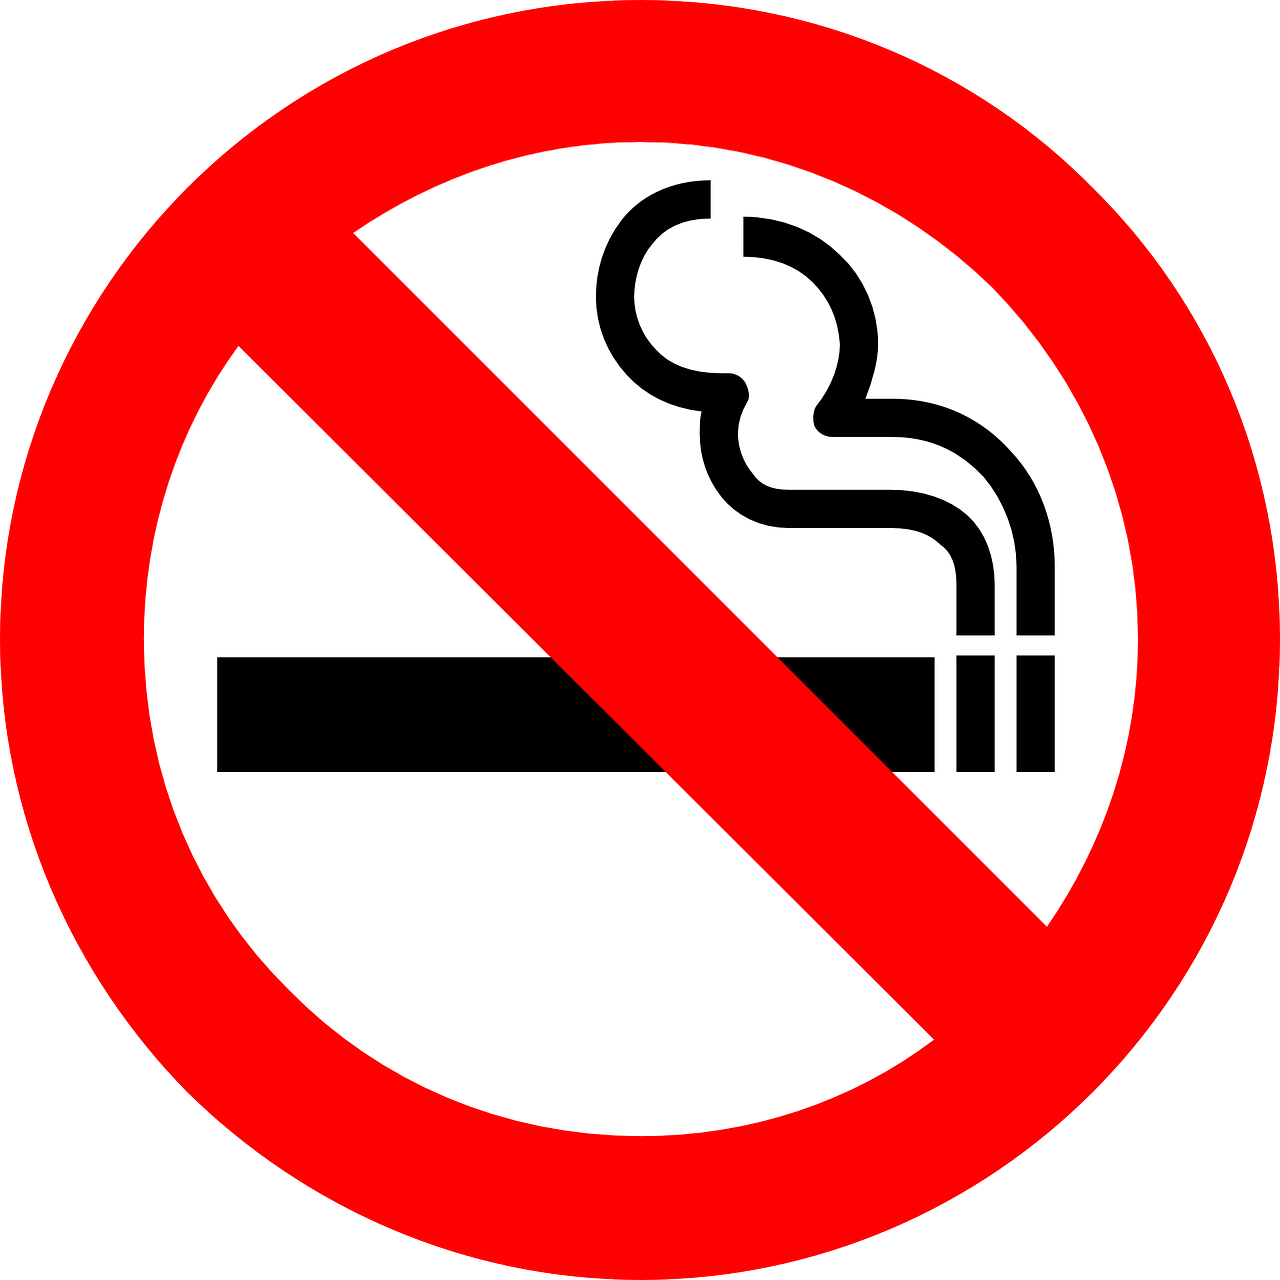 ZieZaZo is een rookvrije locaties. Wij vragen ook onze ouders om niet te roken rondom ons pand. Er wordt ook niet gerookt tijdens de pauzes